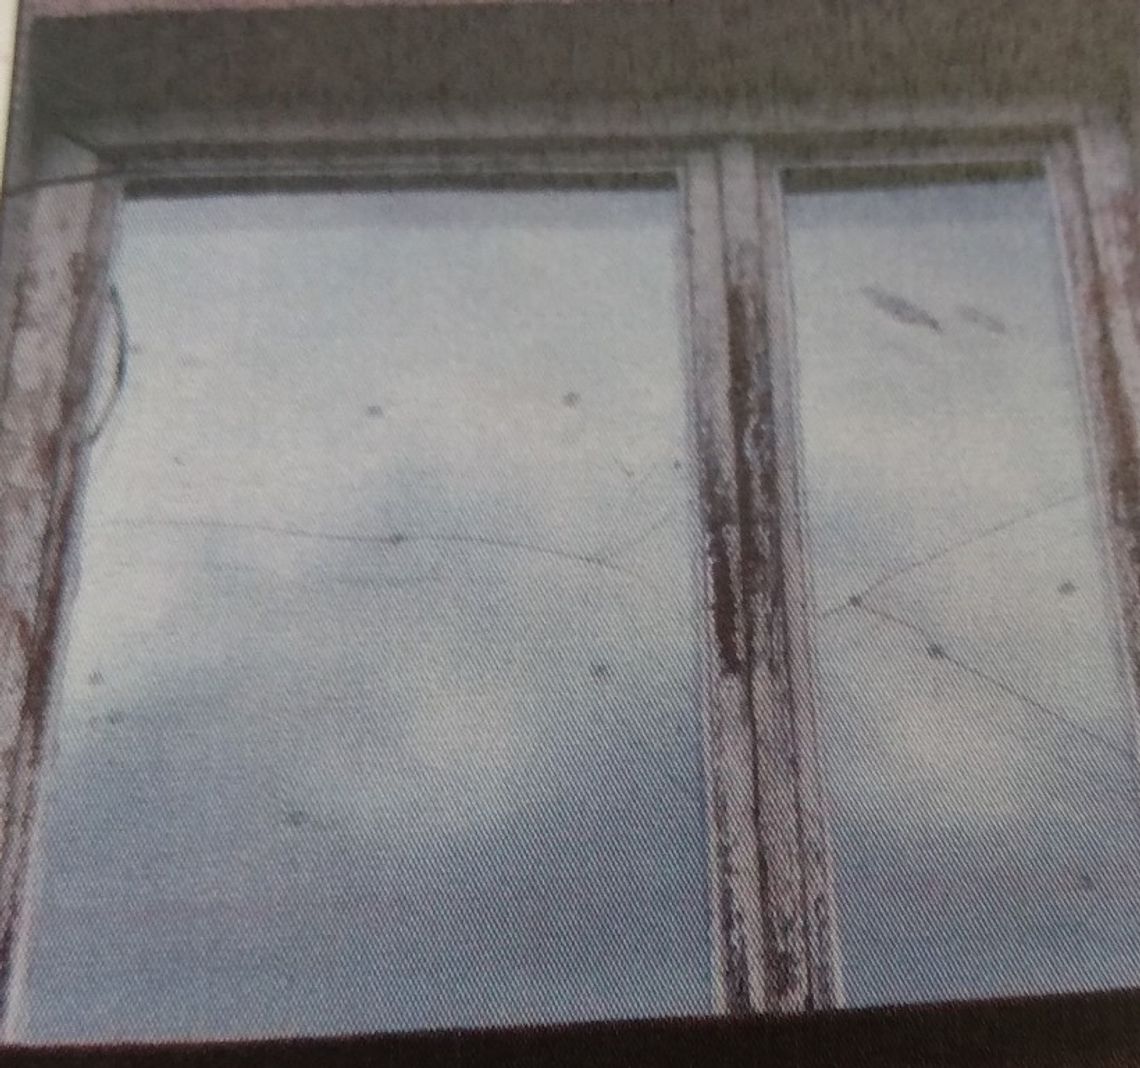 Biała Podlaska: Dla zabawy strzelał w okna z wiatrówki